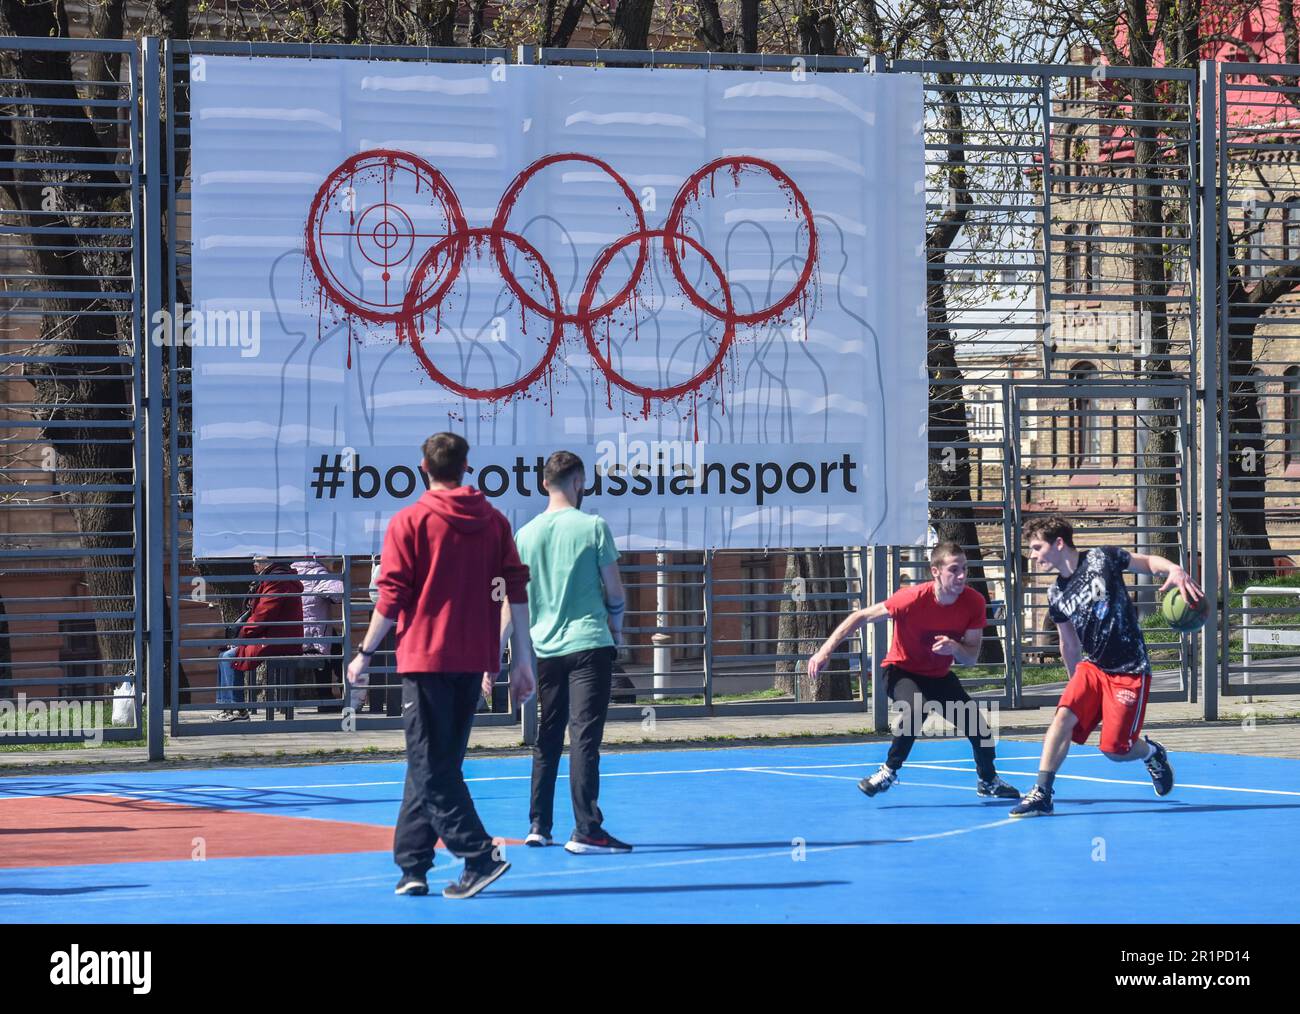 Die Leute spielen Basketball auf dem Hintergrund eines Banners mit der Inschrift #BoycottRussianSport auf einem der Sportplätze in der Lemberg-Ukraine und viele Länder auf der ganzen Welt fordern, dass russische Athleten wegen des von begonnenen russisch-ukrainischen Krieges von den Olympischen Spielen und anderen internationalen Wettkämpfen ausgeschlossen werden Russland. Viele ukrainische Athleten, die die Ukraine vor dem russischen Aggressor verteidigten, sind bereits in diesem Krieg gestorben. Zur Unterstützung des Boykotts wurde ein Banner mit der Aufschrift #BoycottRussianSport auf einem der Sportplätze in Lemberg aufgehängt. Stockfoto